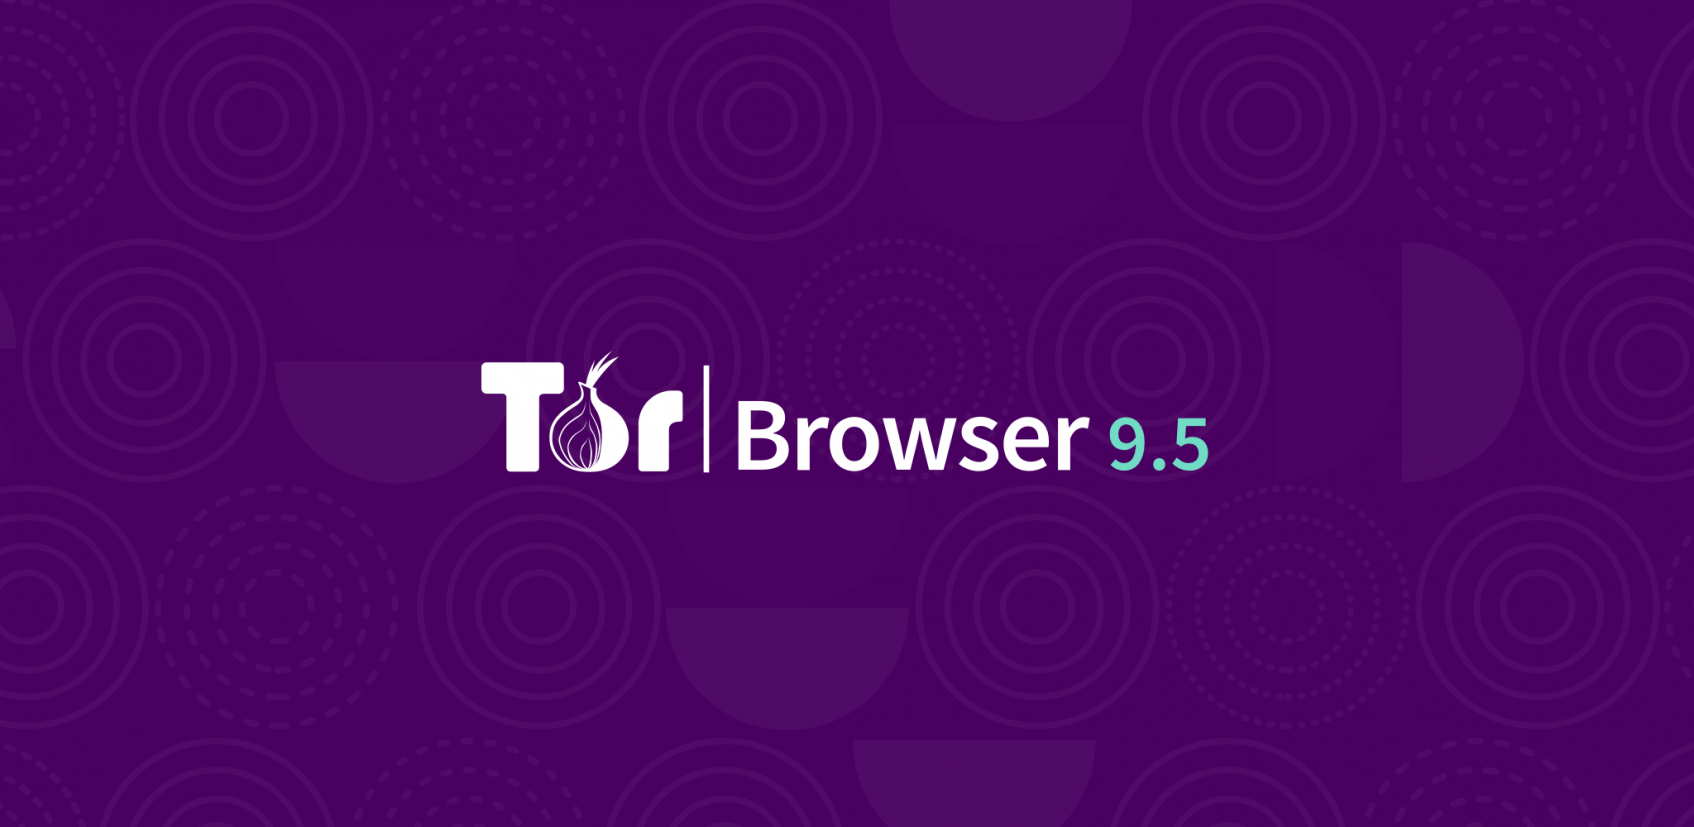 Tor browser 2 download gydra даркнет что это такое простыми